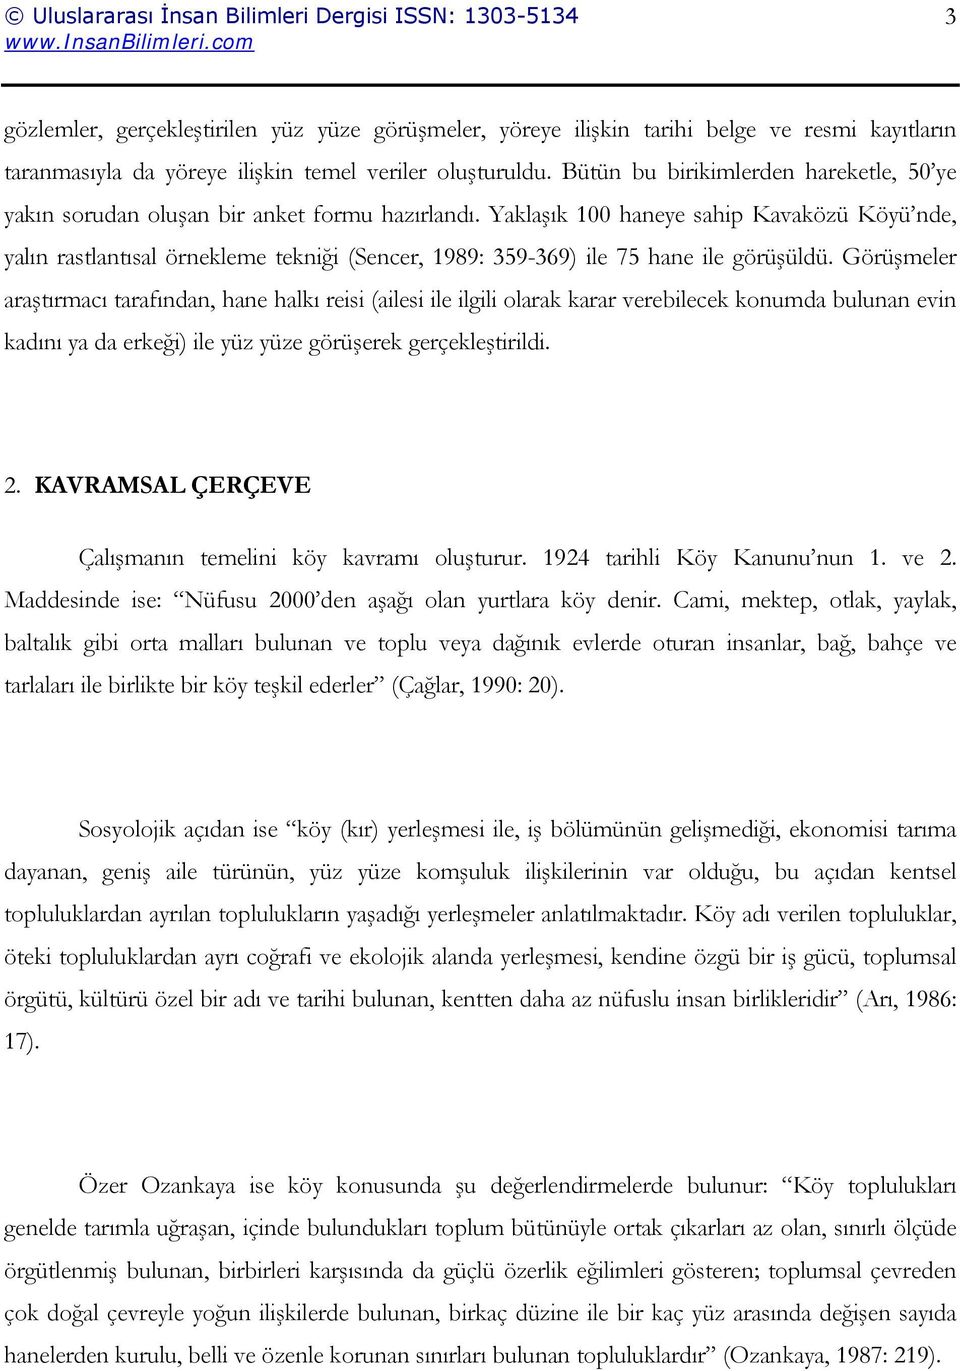 Yaklaşık 100 haneye sahip Kavaközü Köyü nde, yalın rastlantısal örnekleme tekniği (Sencer, 1989: 359-369) ile 75 hane ile görüşüldü.